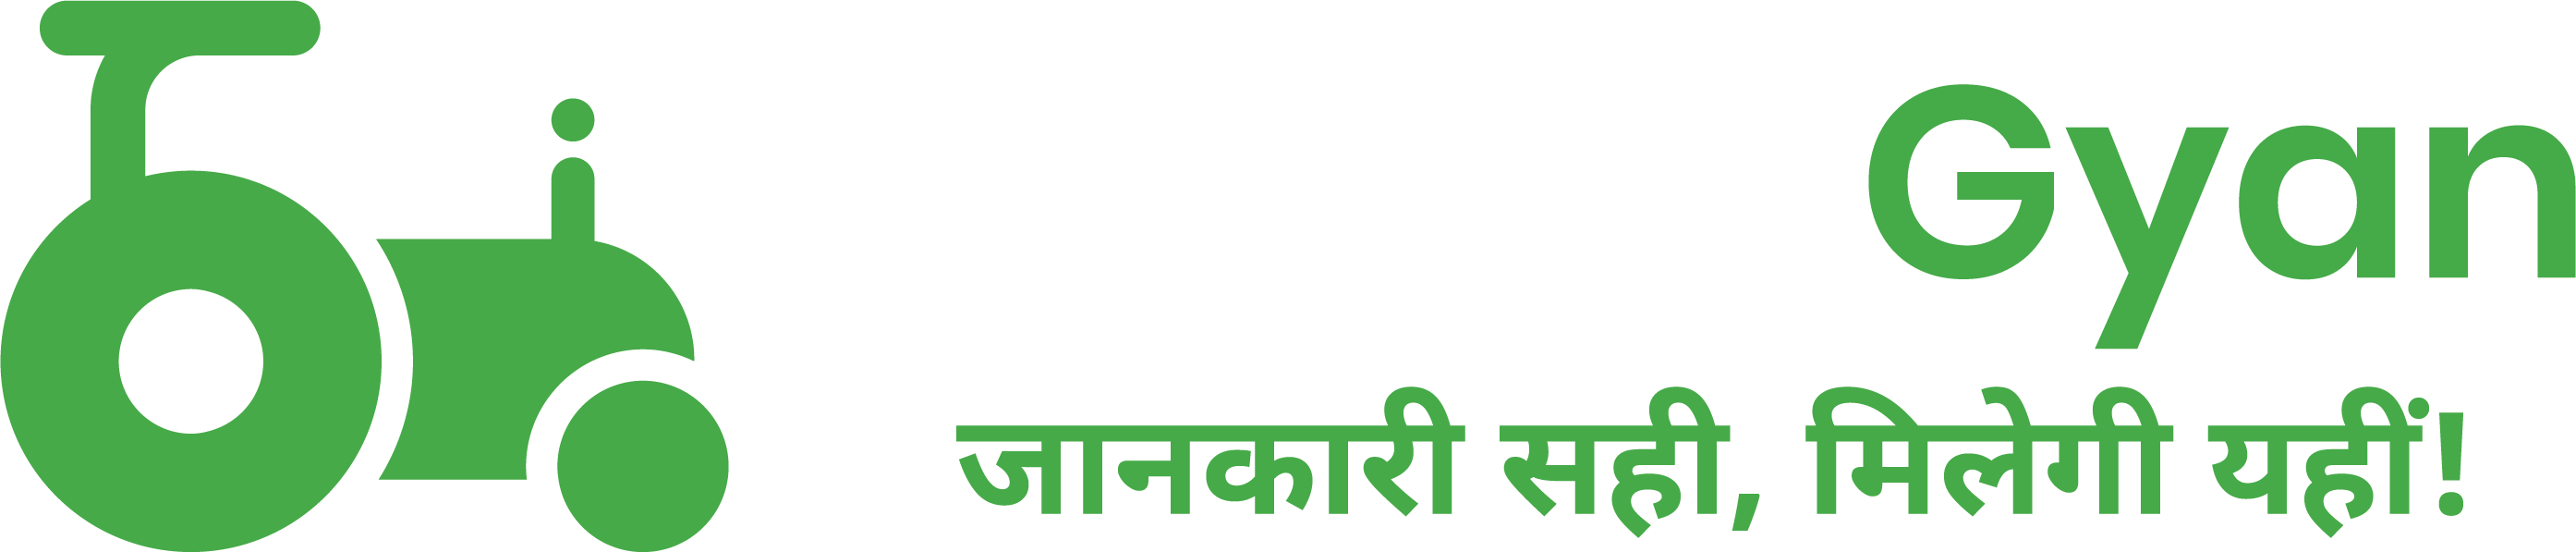 tractorgyan logo